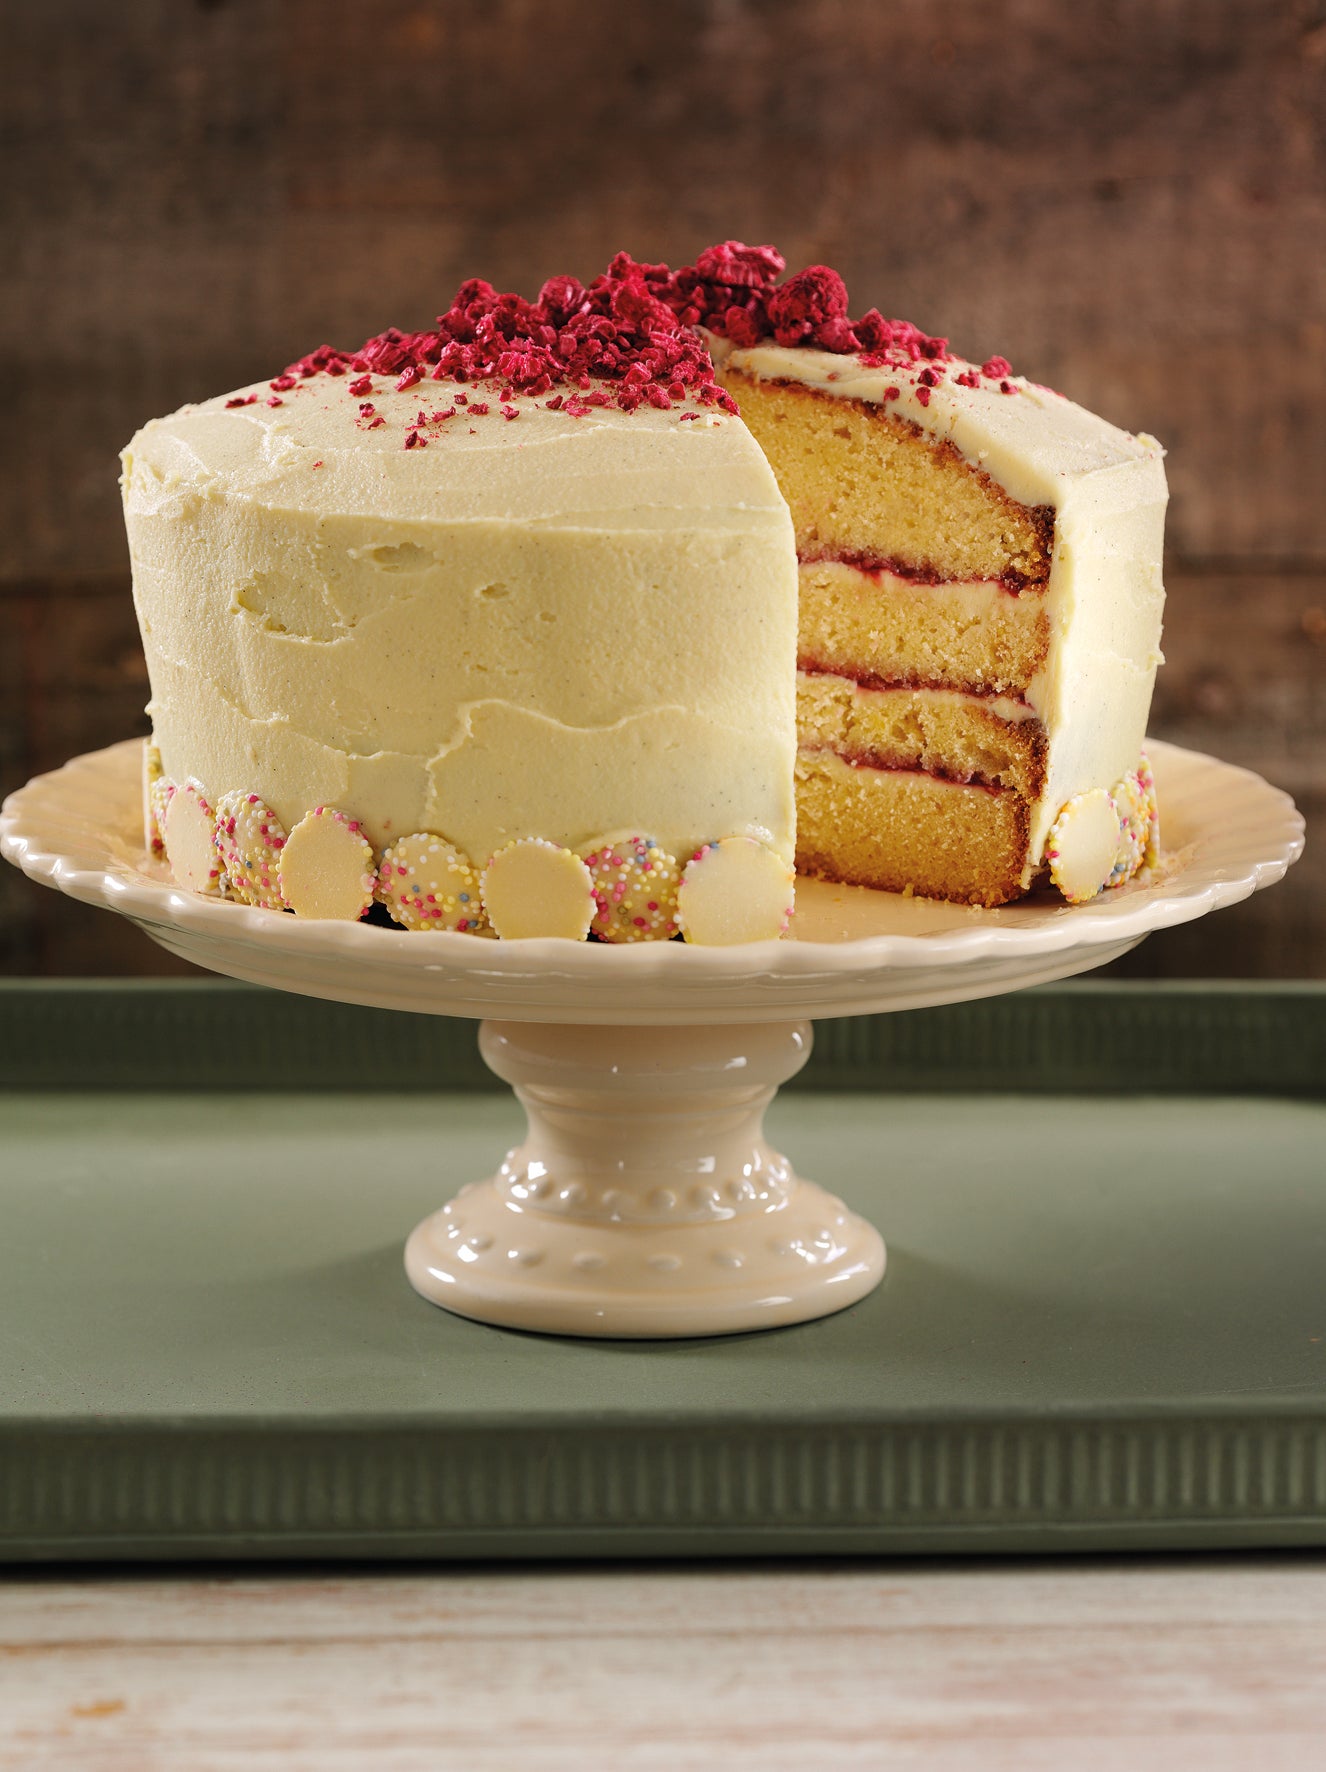 Basic Plain Vanilla Sponge Cake - Hot Milk Cake, Moist and Fluffy